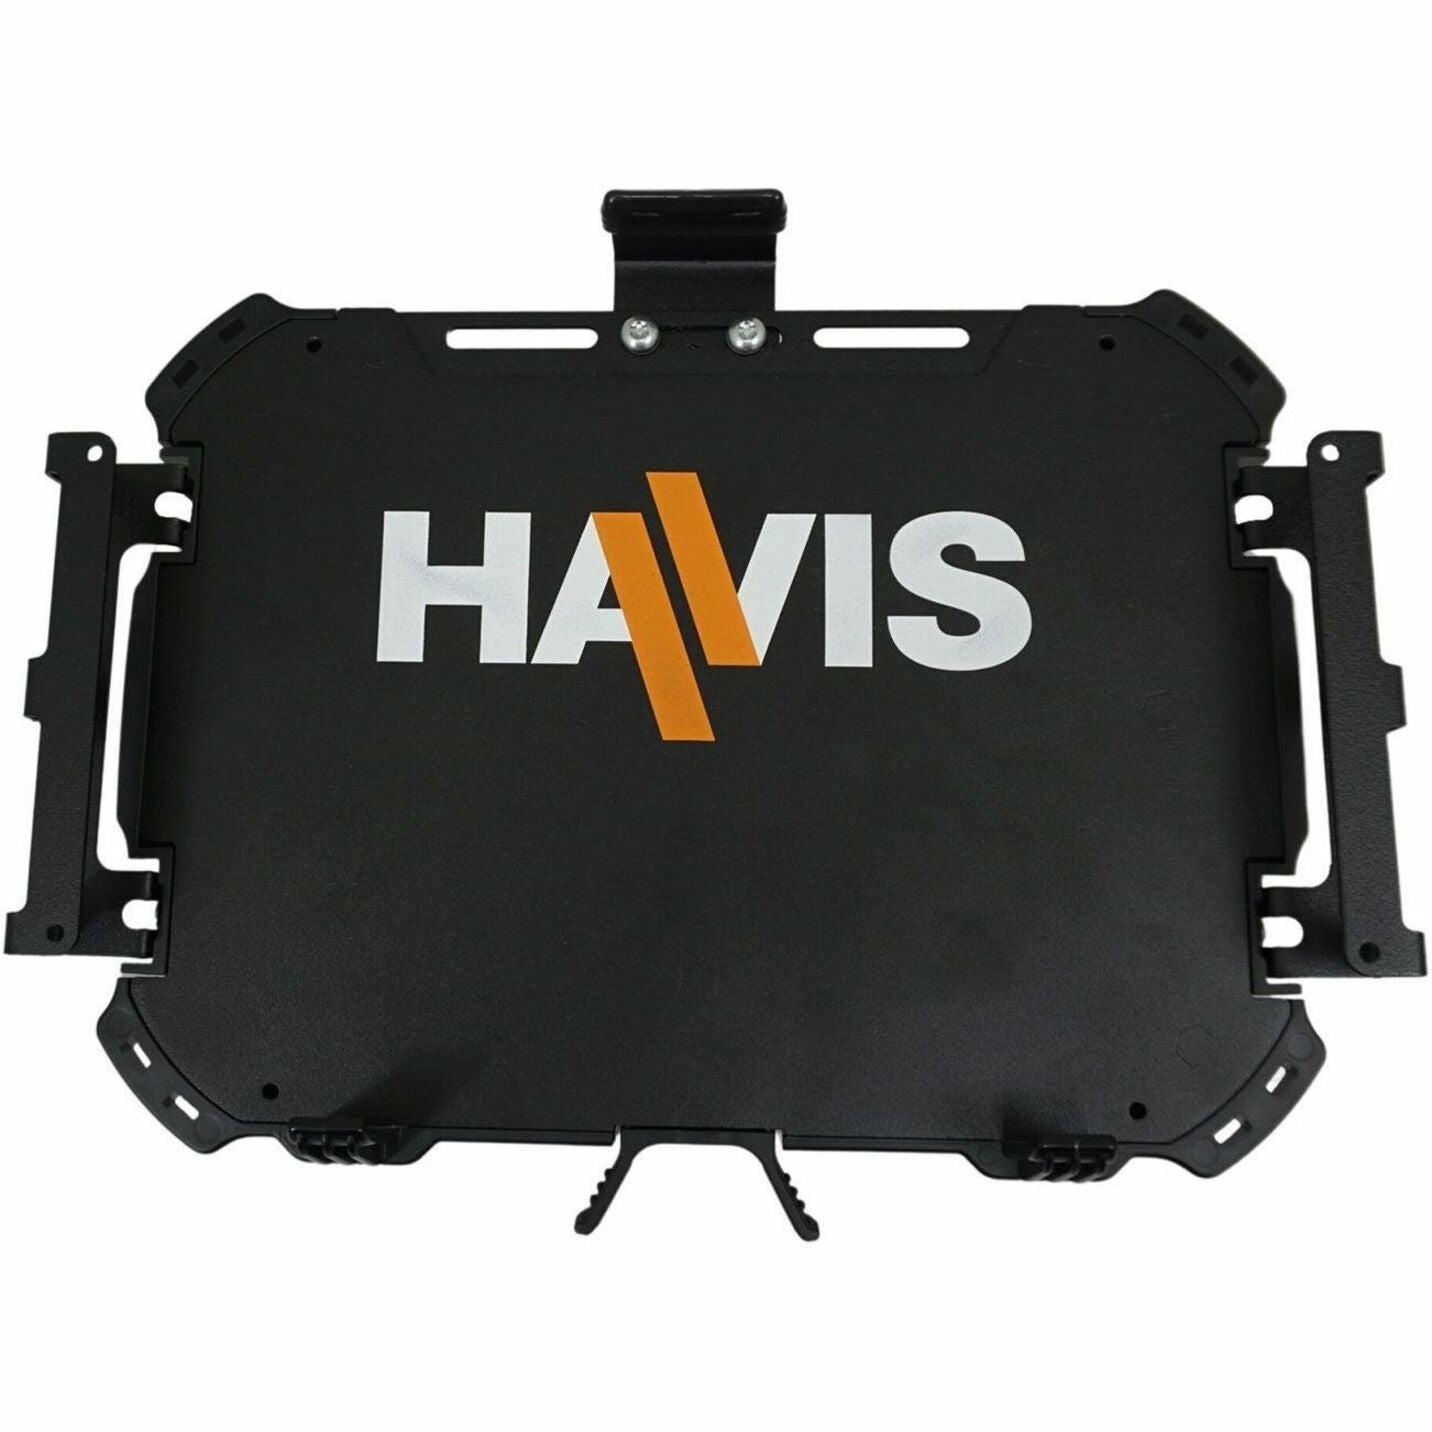 Havis UT-2010 Rugged Cradle For Dell Latitude 5285 Or HP Elite X2, Easy Lug Kit Install Instructions